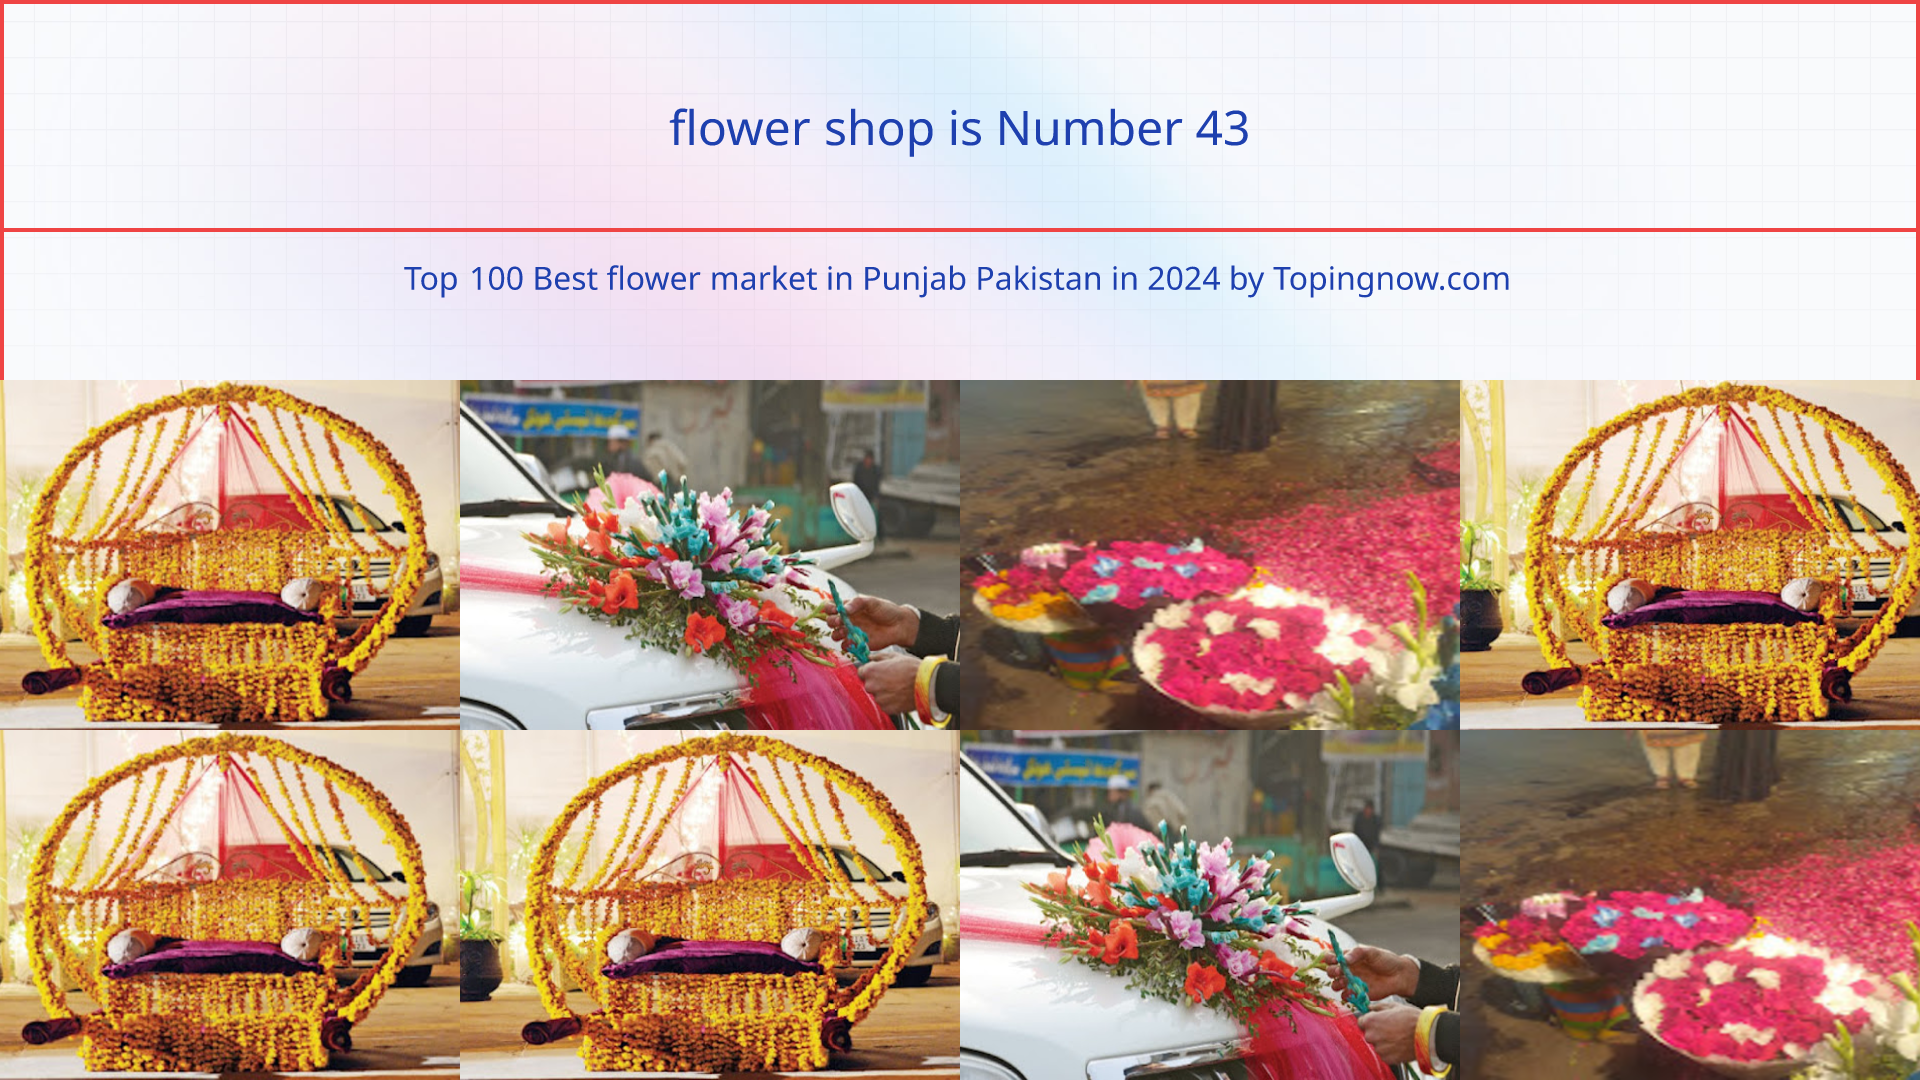 flower shop: Top 100 Best flower market in Punjab Pakistan in 2024